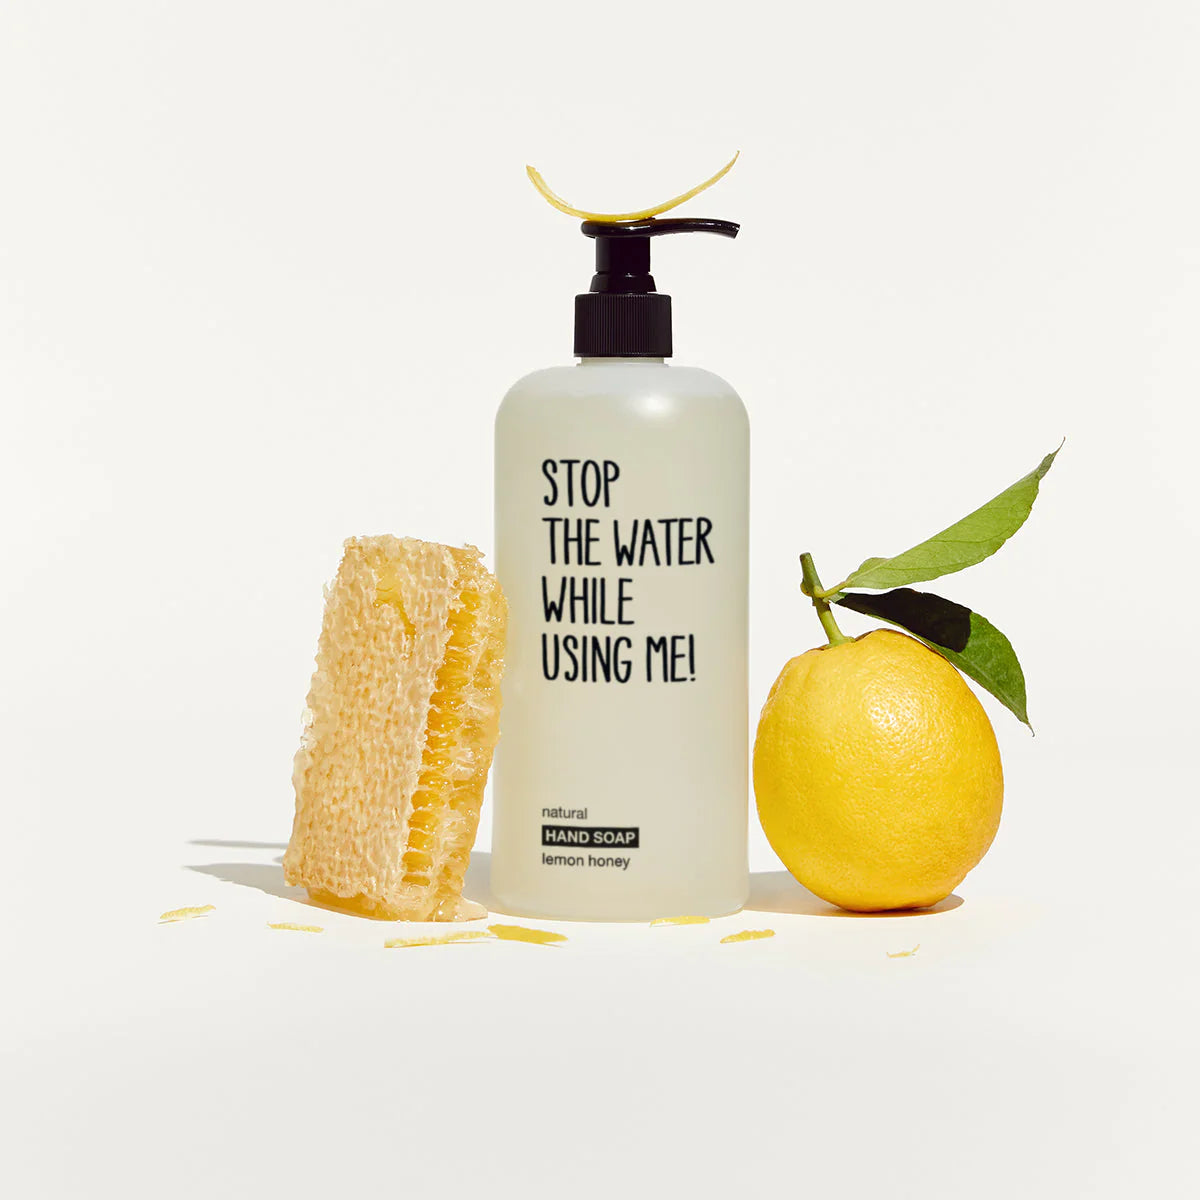 Hand Soap lemon Honey 200ml and 500ml